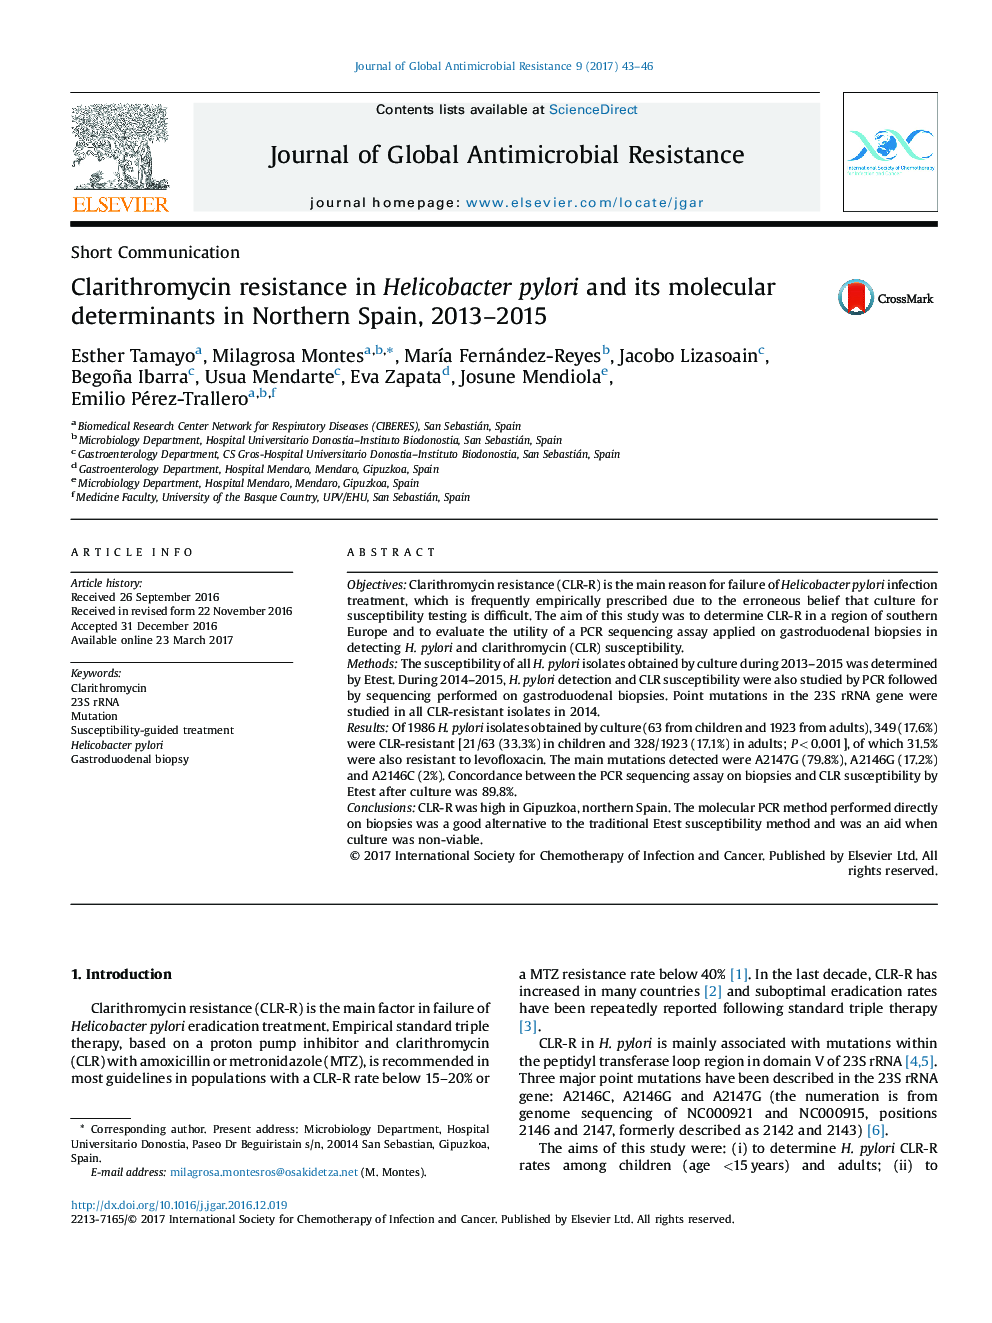 مقاومت به کلاریترومایسین در هلیکو باکتر پیلوری و تعیین کننده مولکولی آن در شمال اسپانیا، 2013-2015 